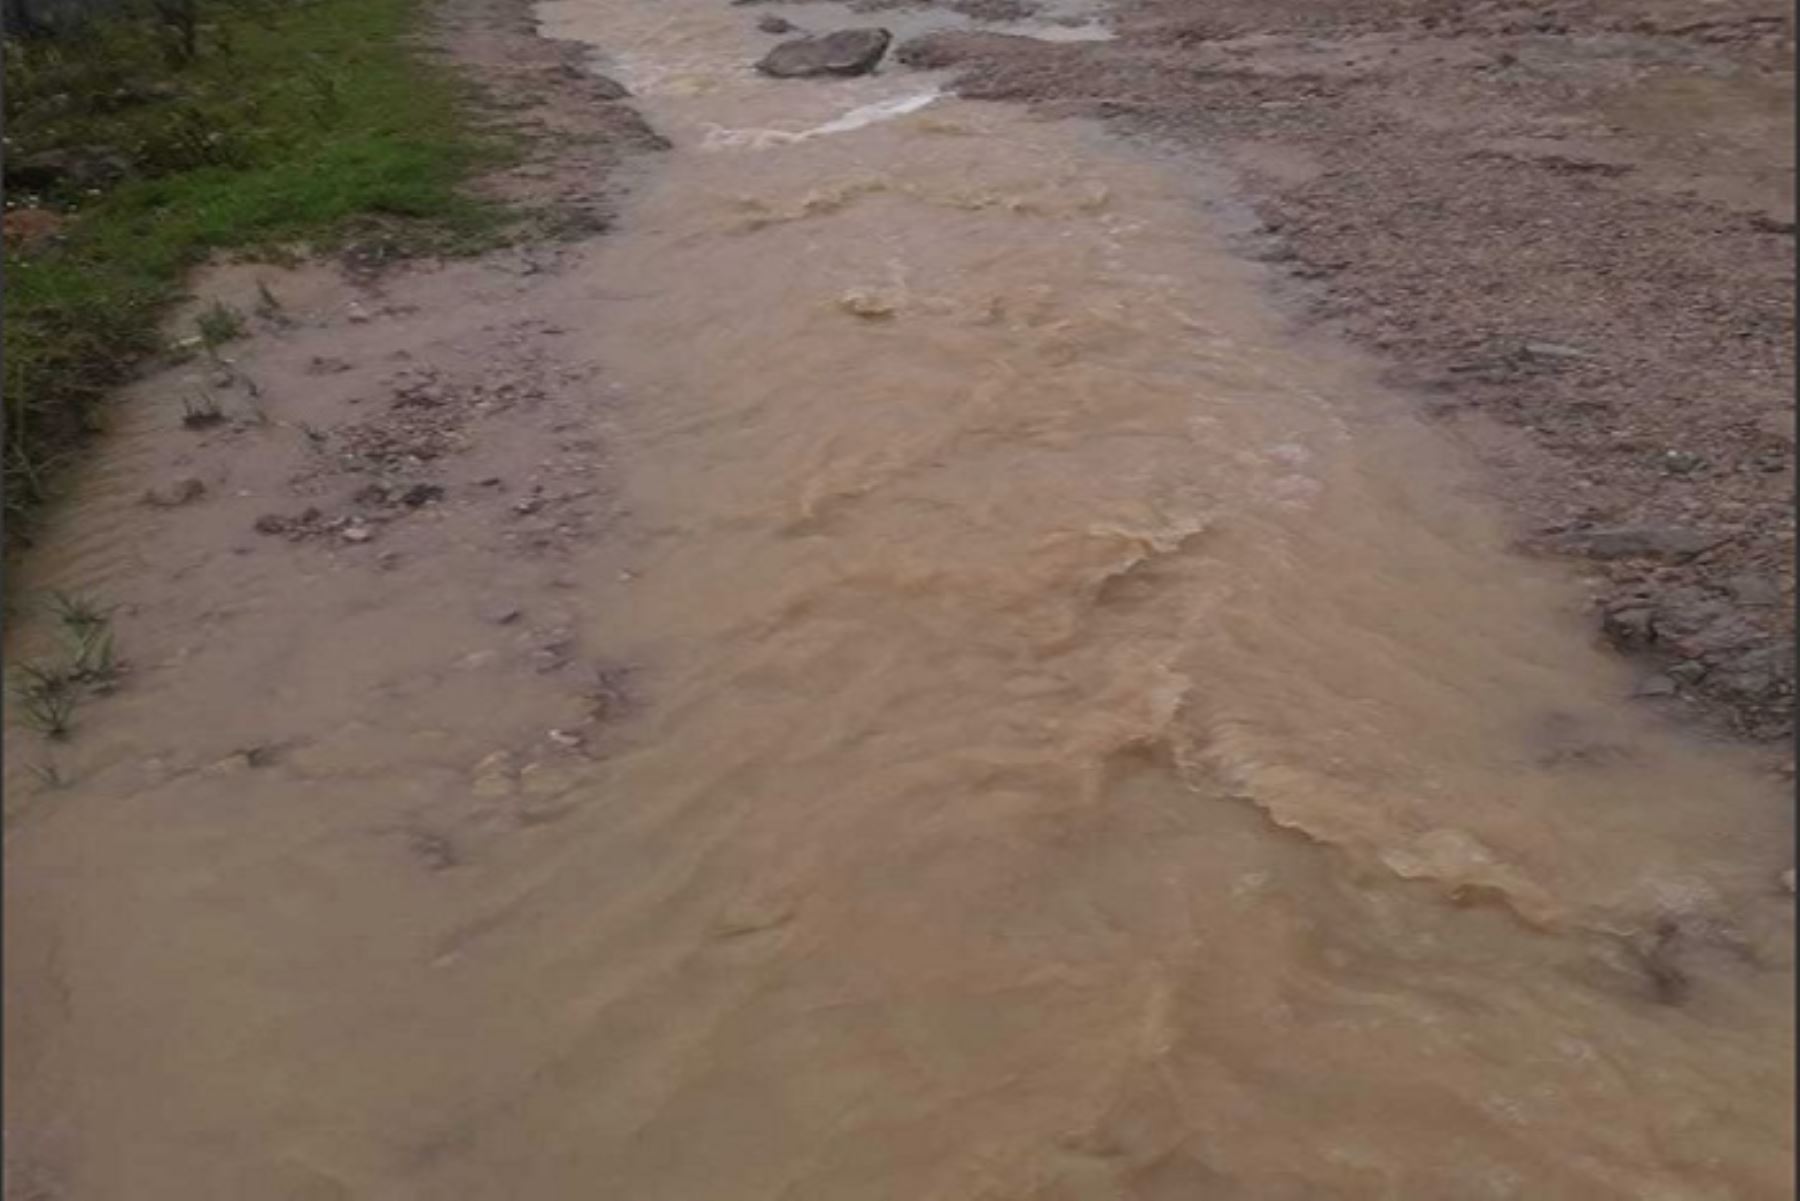 La vía vecinal en Acobamba, ubicada en la provincia de Sihuas, se encuentra bloqueada a causa de las lluvias intensas que originaron un huaico, informó hoy el Centro de Operaciones de Emergencia Regional (COER) de Áncash.